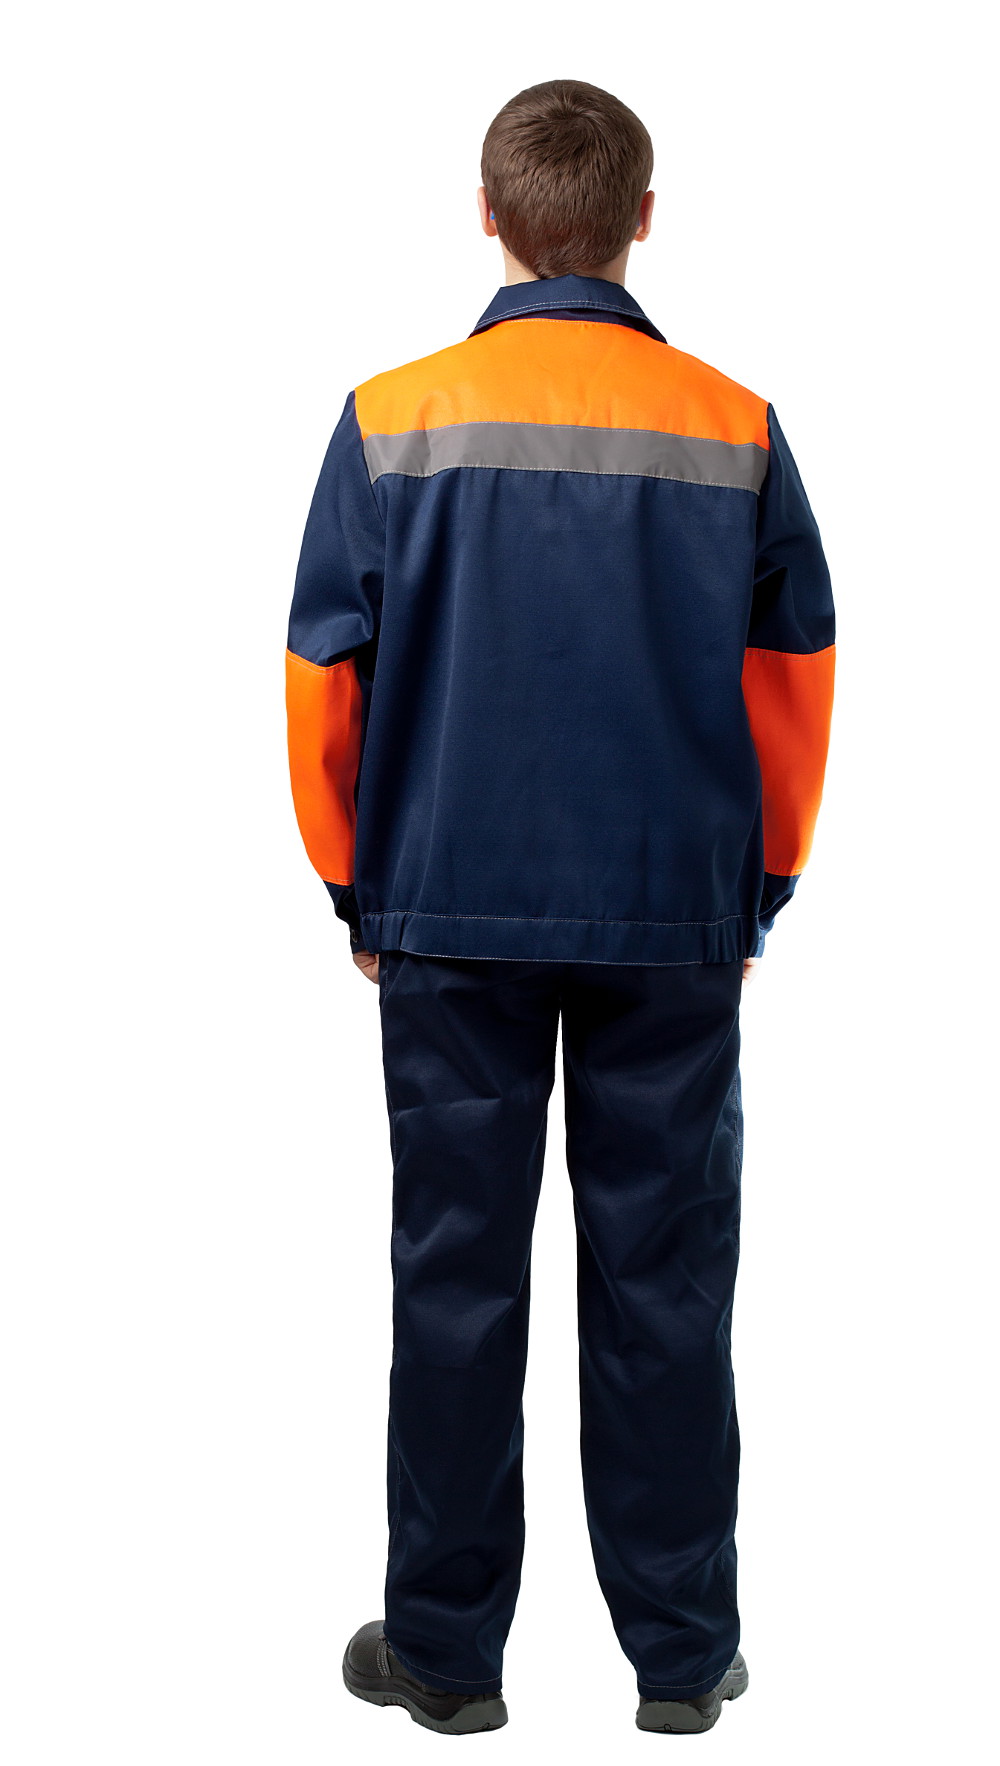 ДНК 109 Костюм «Конвейер» (куртка и полукомбинезон), цвет синий + оранжевый от интернет магазина dnk-kmf.ru, приобрести днк 109 костюм «конвейер» (куртка и полукомбинезон), цвет синий + оранжевый. Фото �3